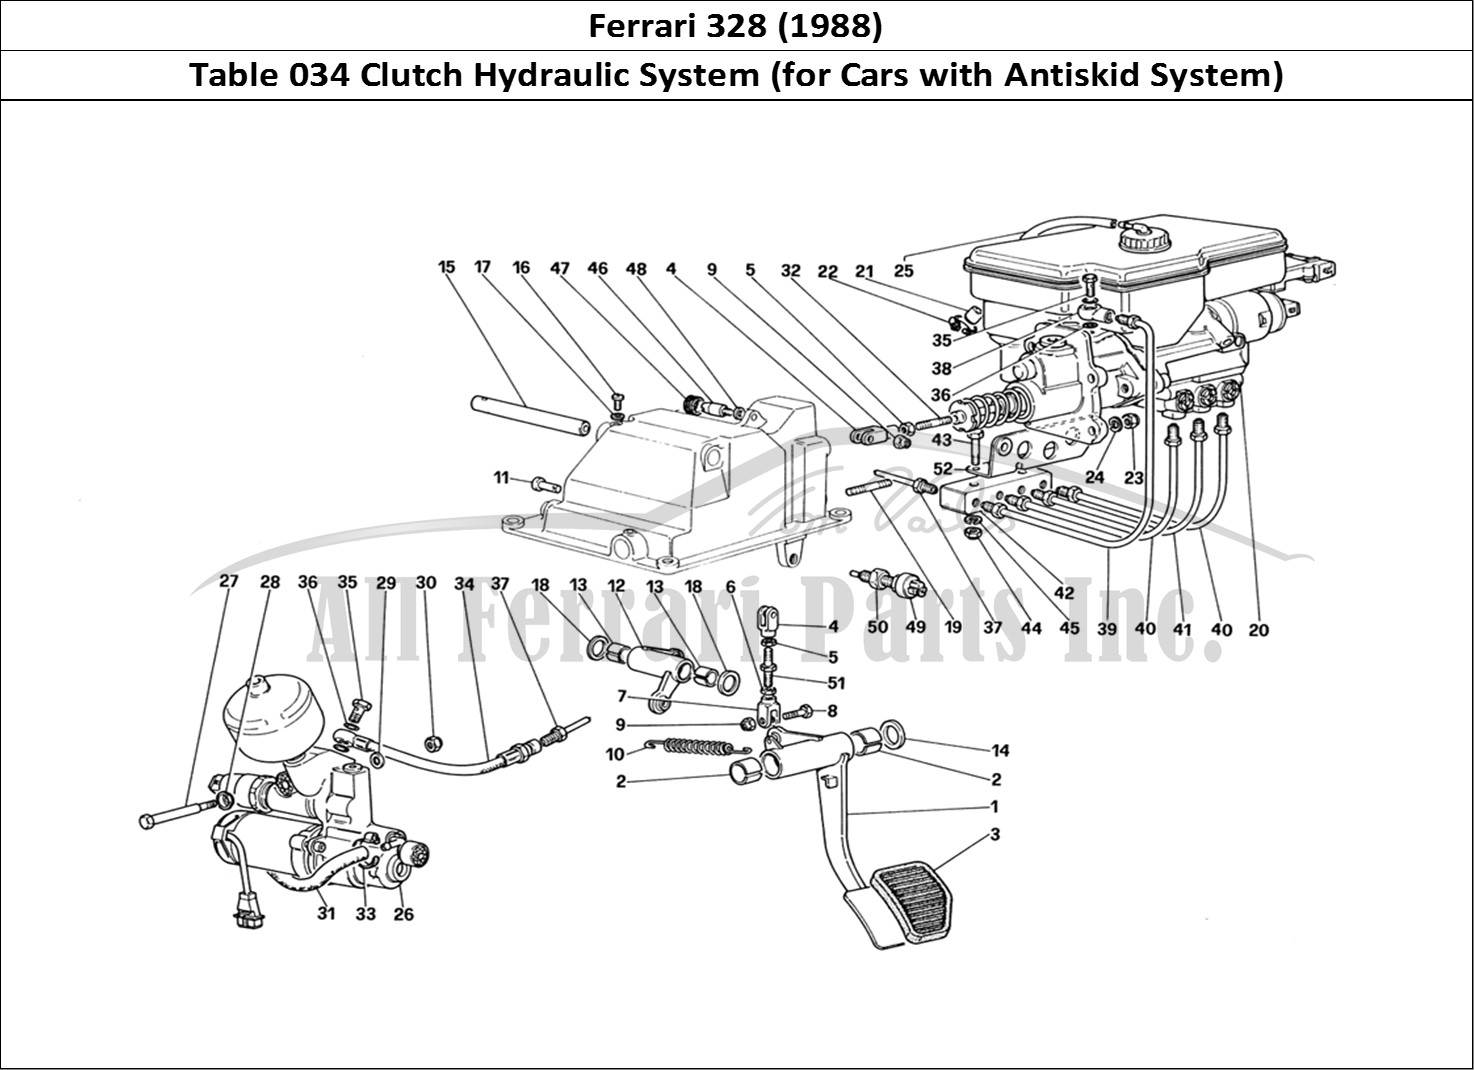 Ferrari Parts Ferrari 328 (1988) Page 034 Clutch Hydraulic System (